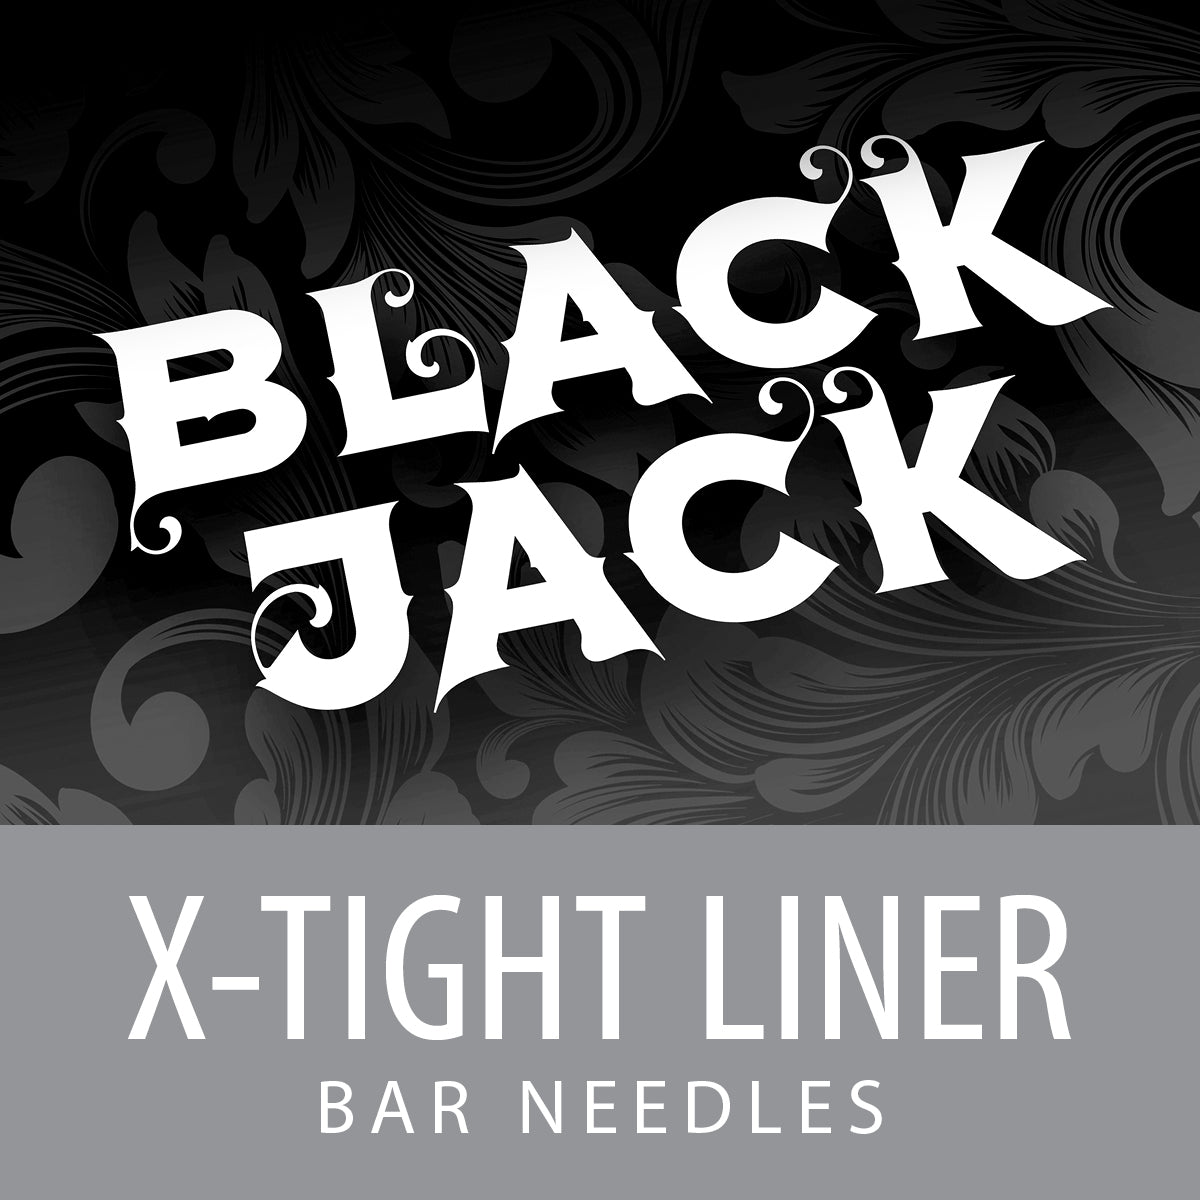 Black Jack Extra Tight Liner Bar Needles